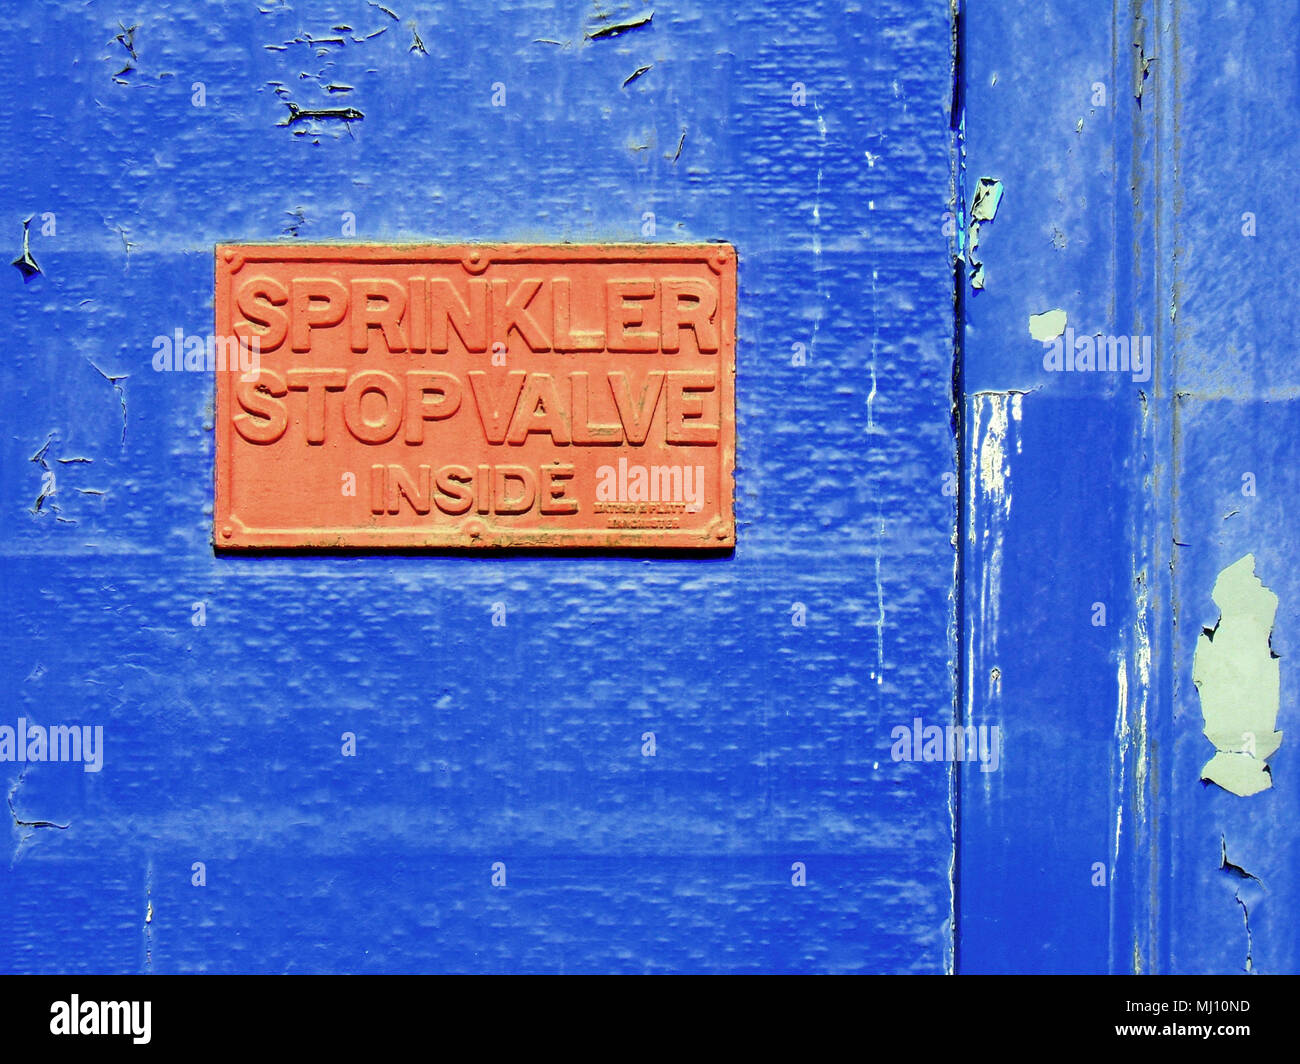 sprinkler stop valve inside sign orange on blue building background Stock Photo